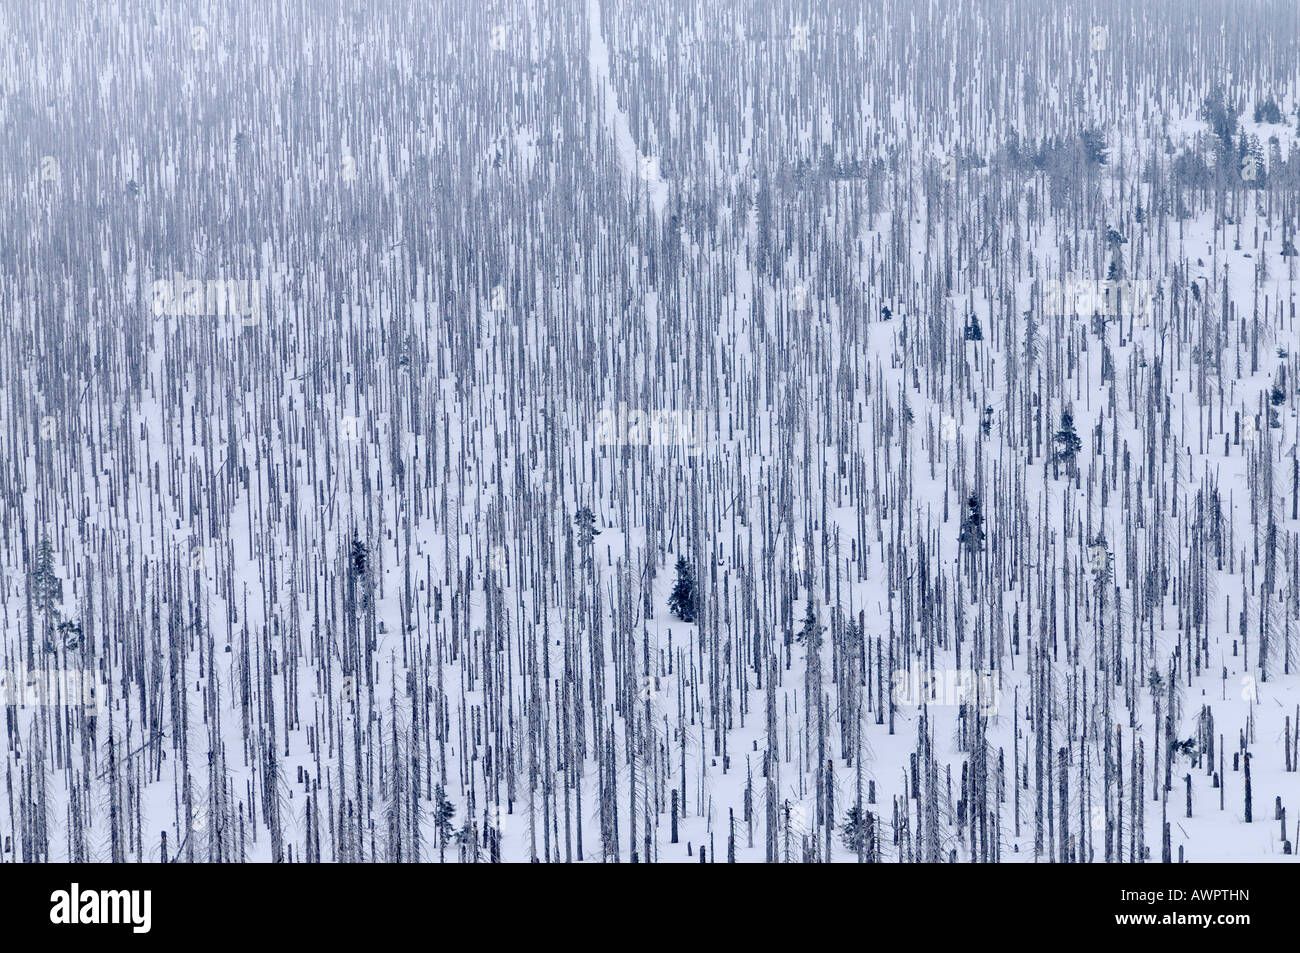 Des forêts endommagées par des scolytes, Lusen, Bayerischer Wald (forêt de Bavière), Bavaria, Germany, Europe Banque D'Images